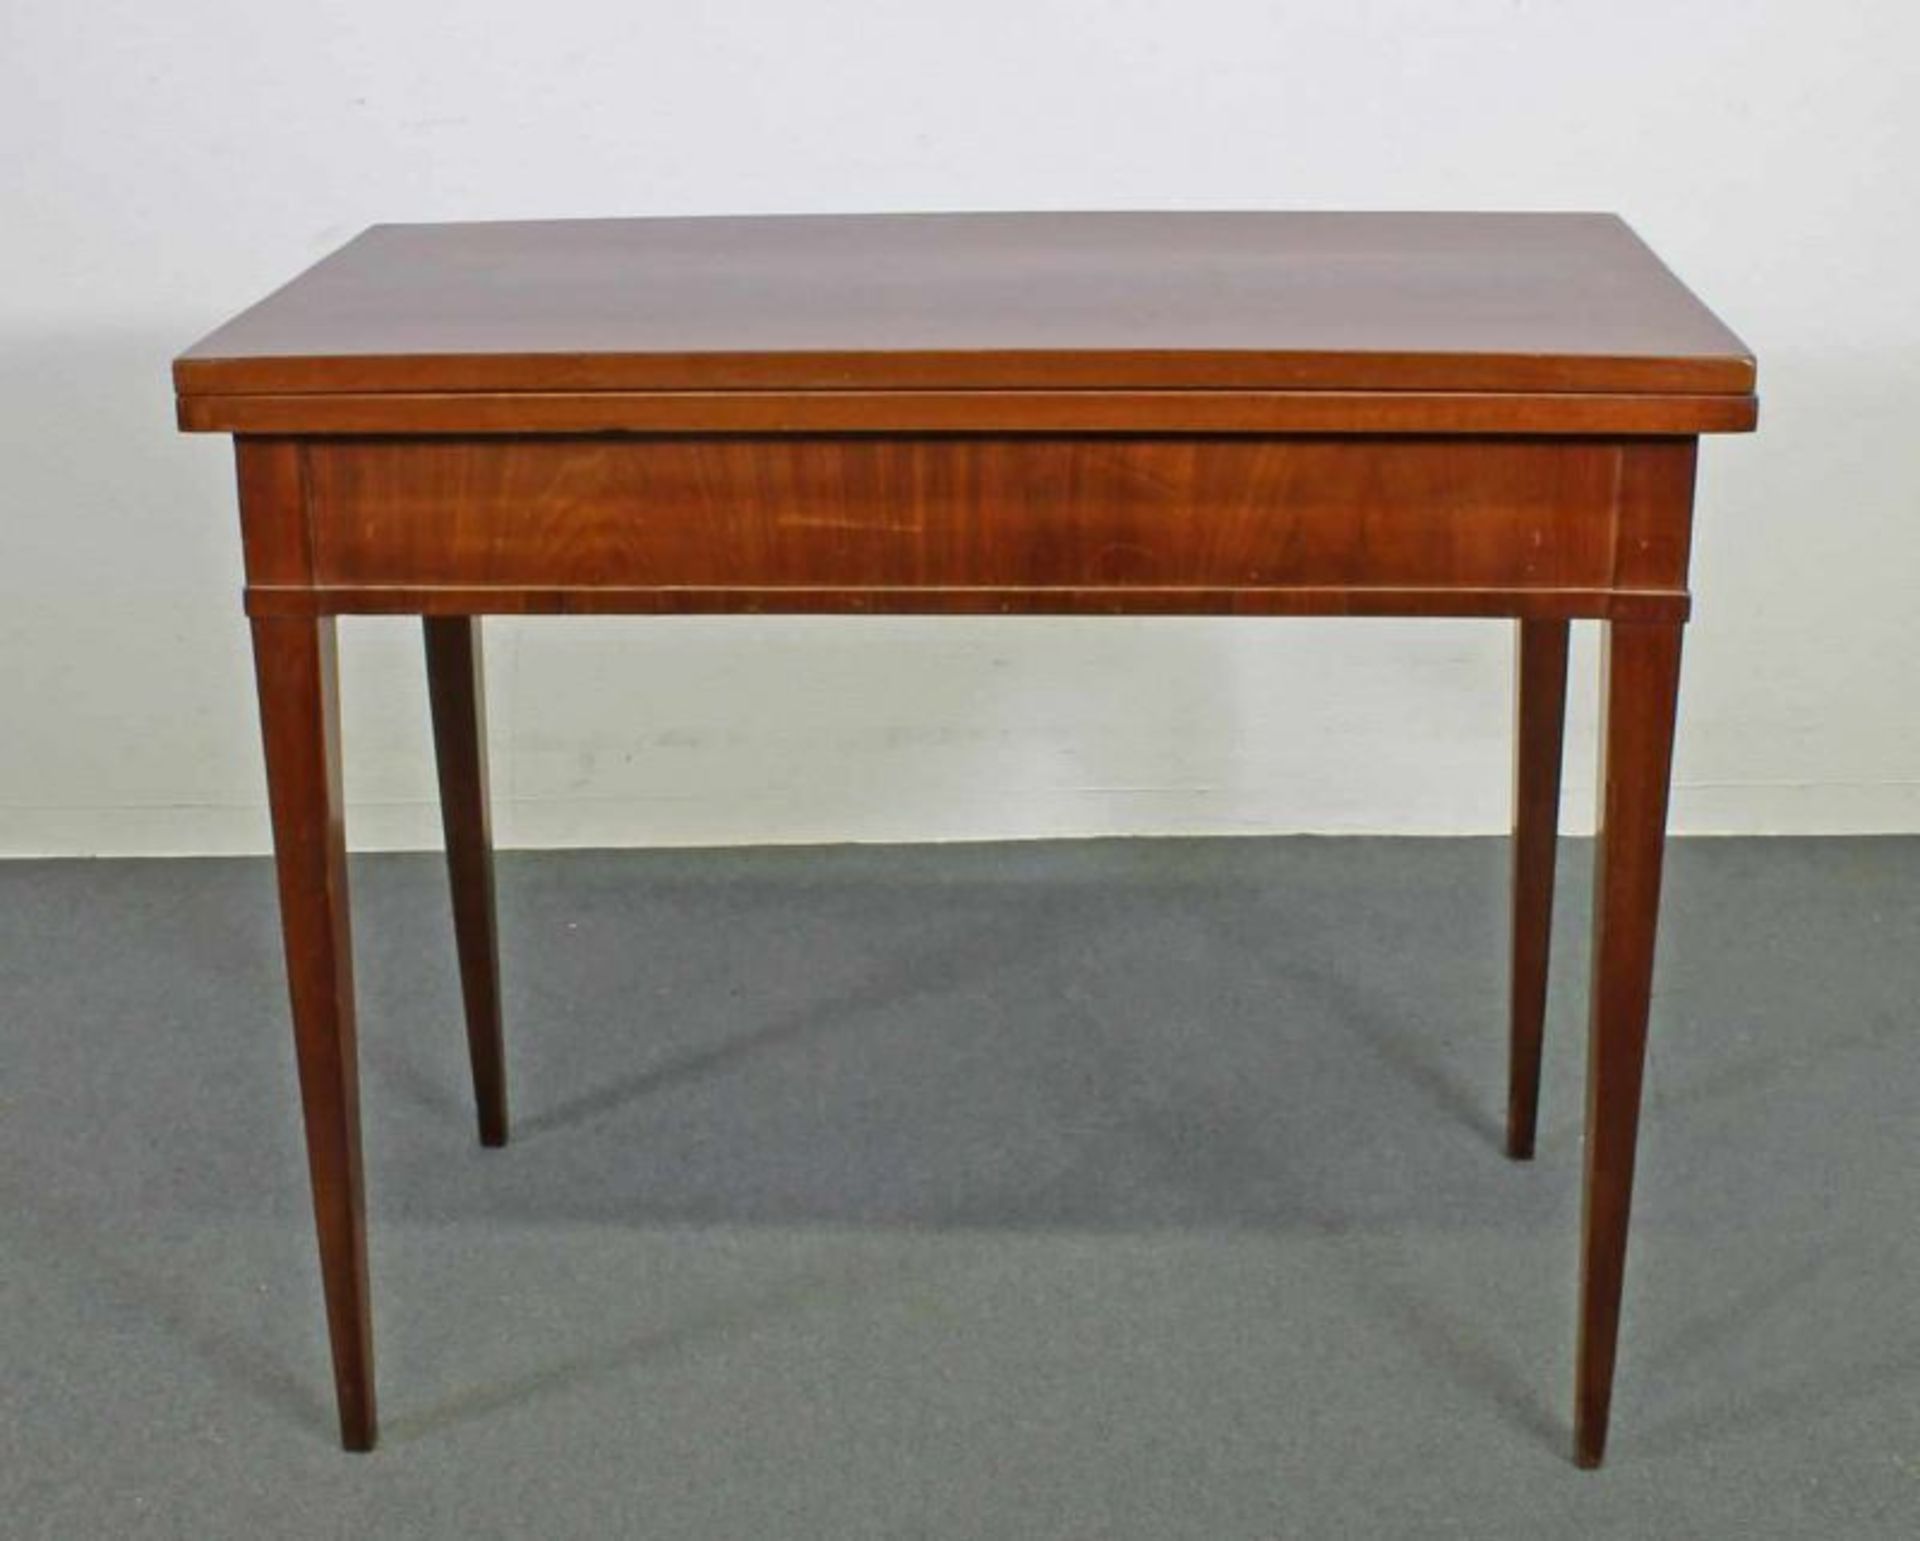 Spieltisch, Norddeutsch, um 1800, Mahagoni, Platte aufklappbar, 74.5 x 89 x 43 (86) cm, Platte lose,